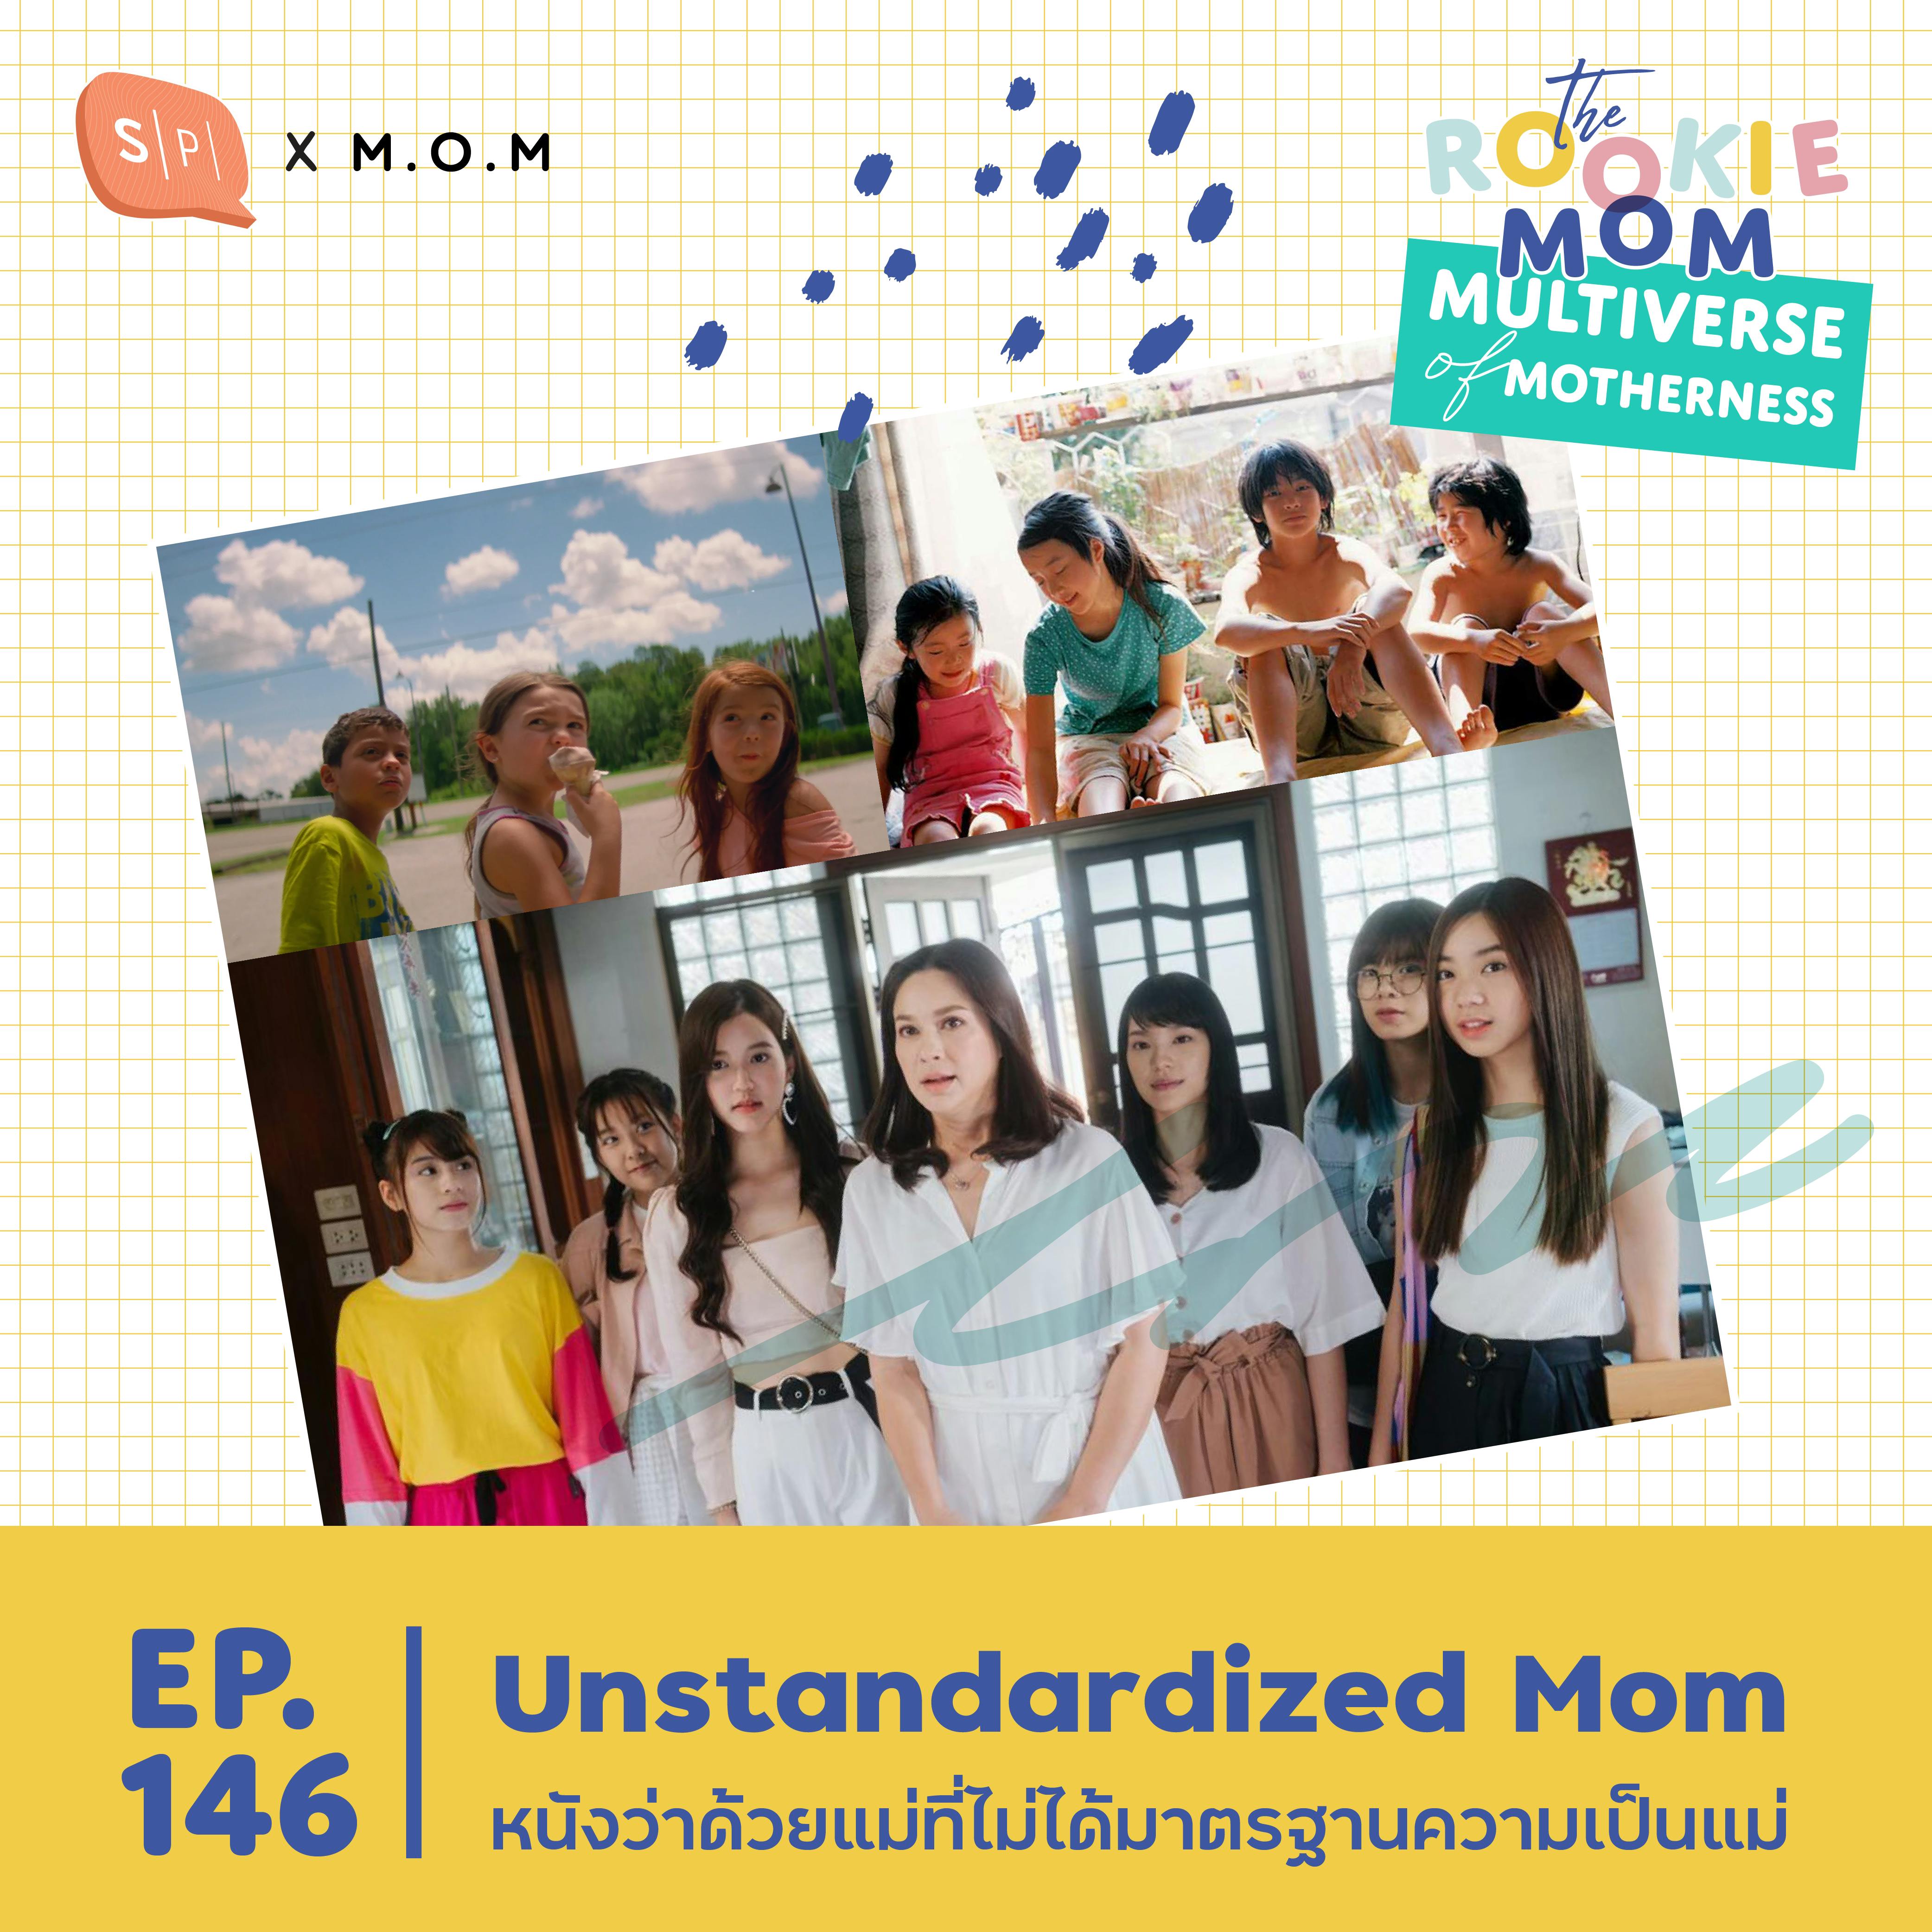 Unstandardized Mom หนังว่าด้วยแม่ที่ไม่ได้มาตรฐานความเป็นแม่ | EP146